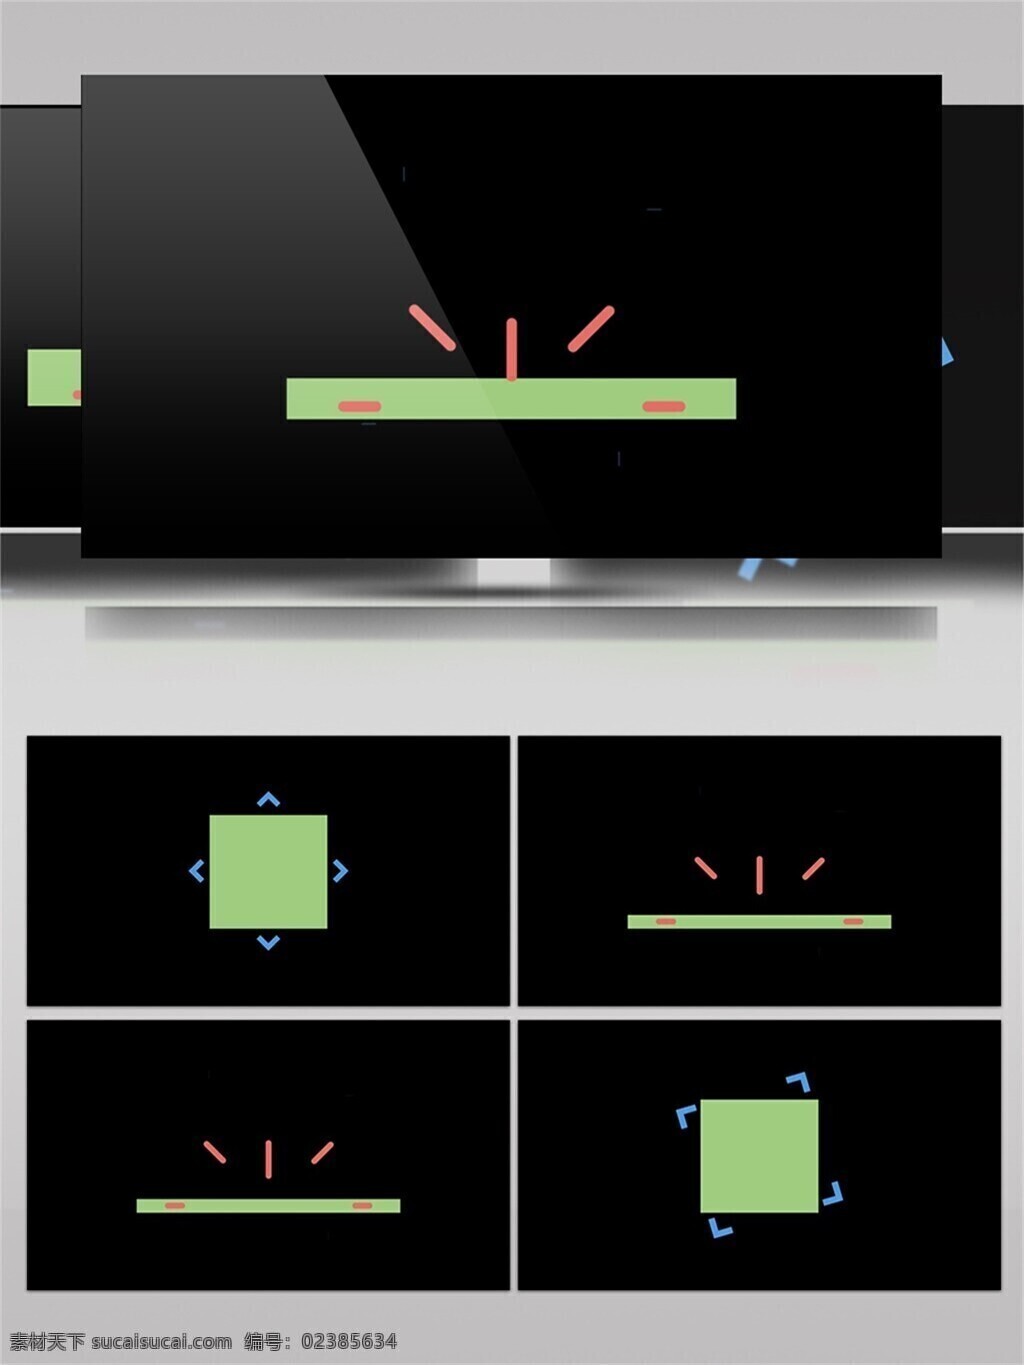 各种 图形 组合 动画 视频 正方形 长方形 图案 动态 形状 组合素材 动画元素